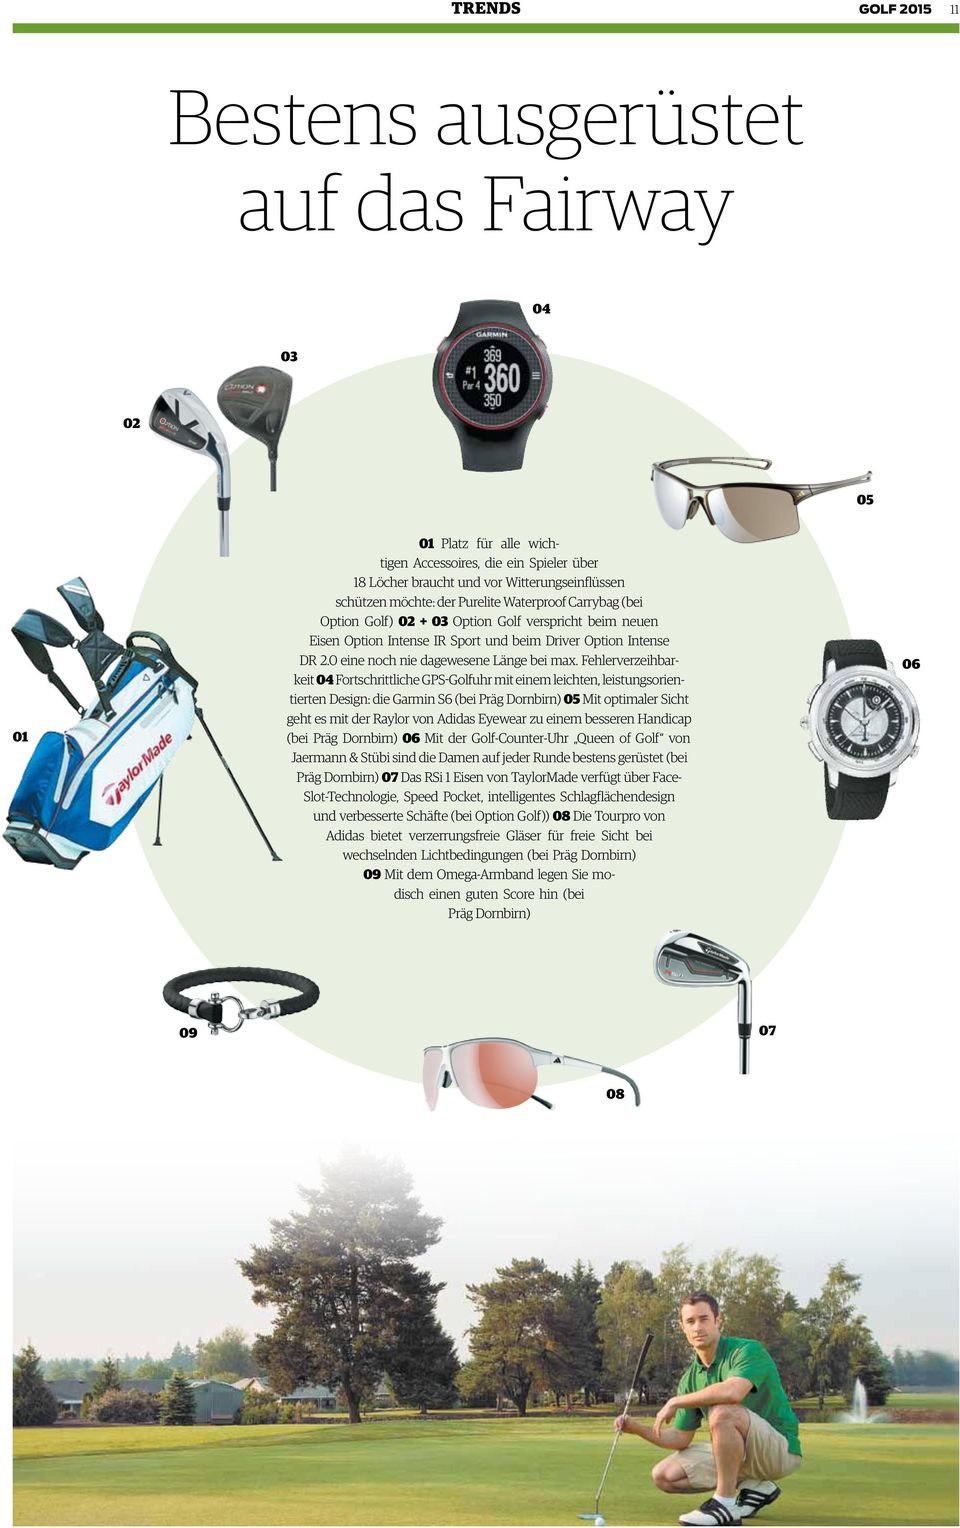 Fehlerverzeihbarkeit 04 Fortschrittliche GPS-Golfuhr mit einem leichten, leistungsorientierten Design: die Garmin S6 (bei Präg Dornbirn) 05 Mit optimaler Sicht geht es mit der Raylor von Adidas